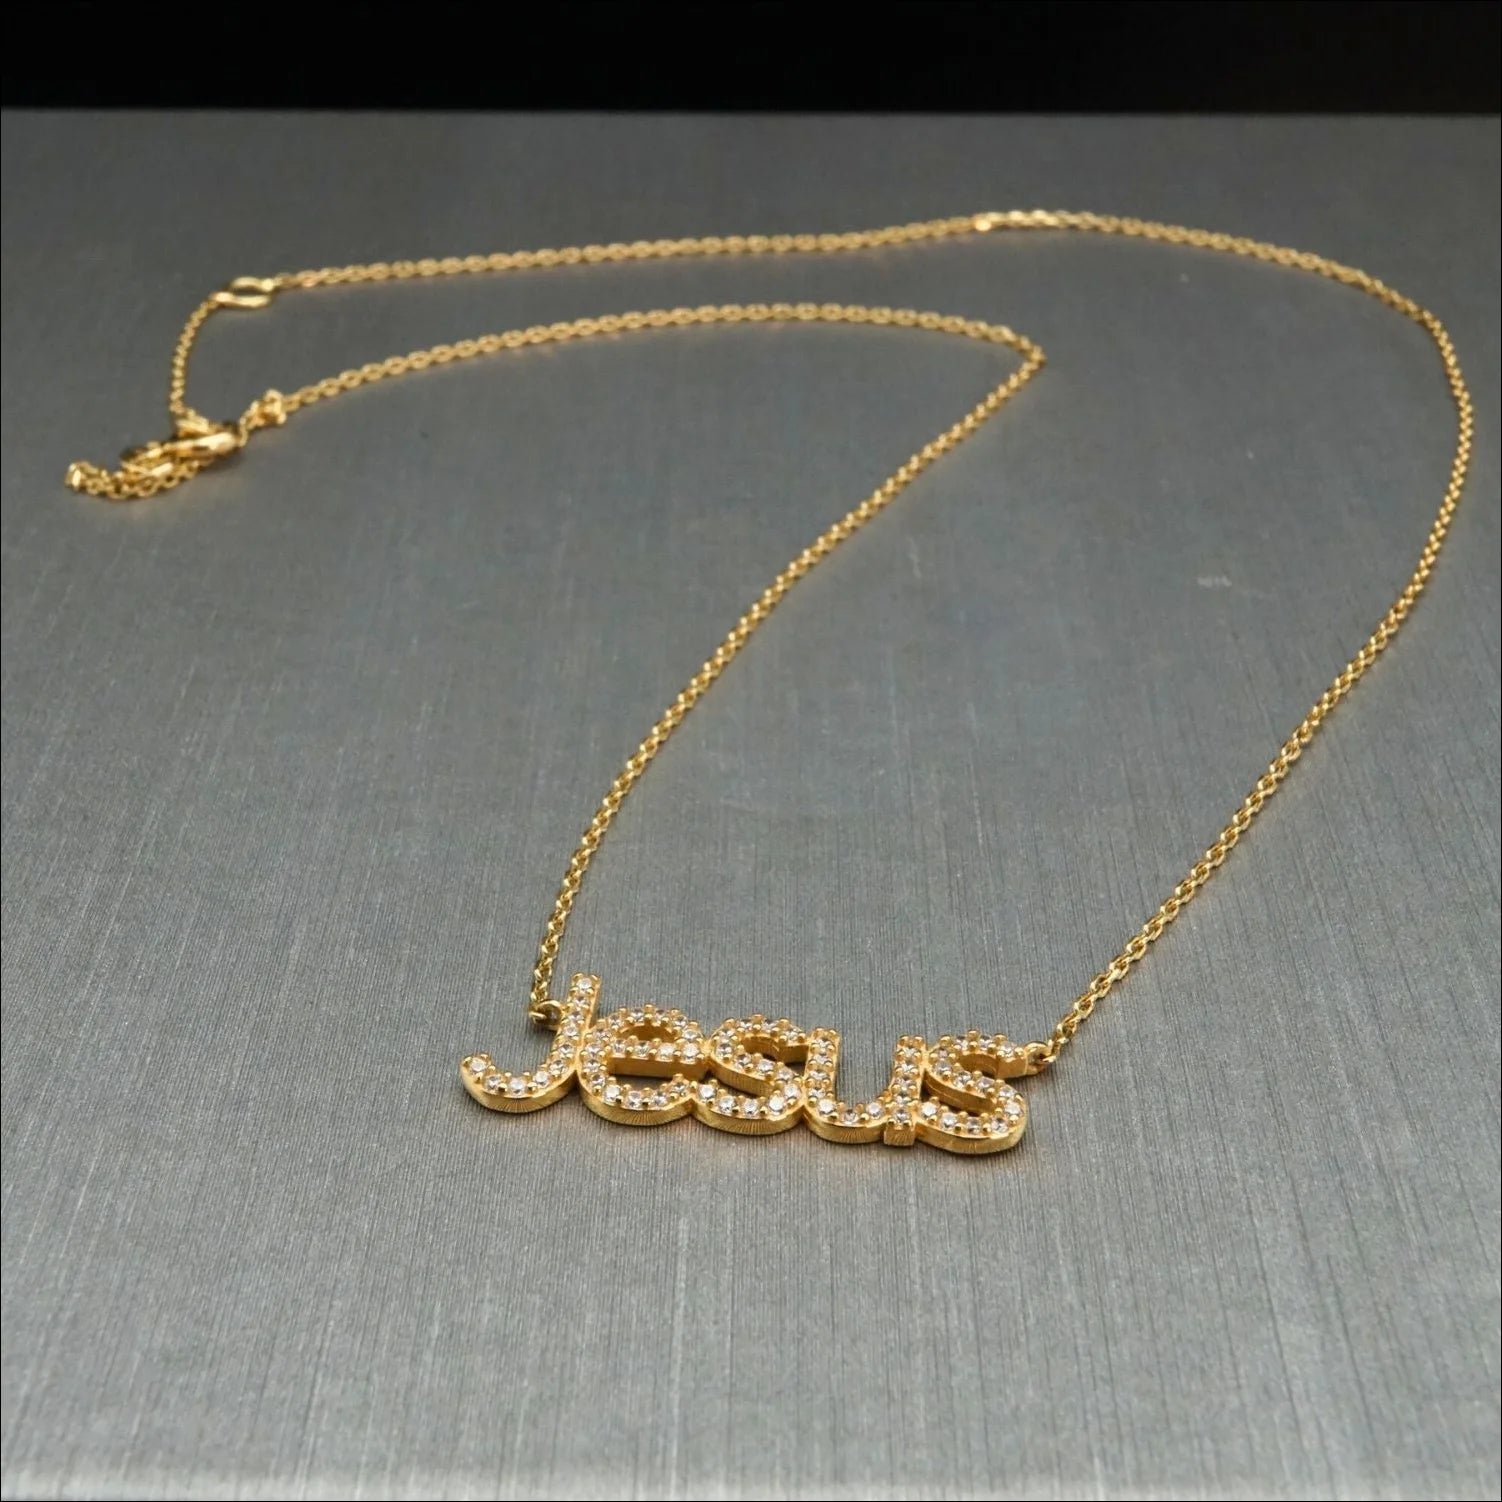 Jesus Pendant Gold Necklace - Art Gold Craftsmanship | Home